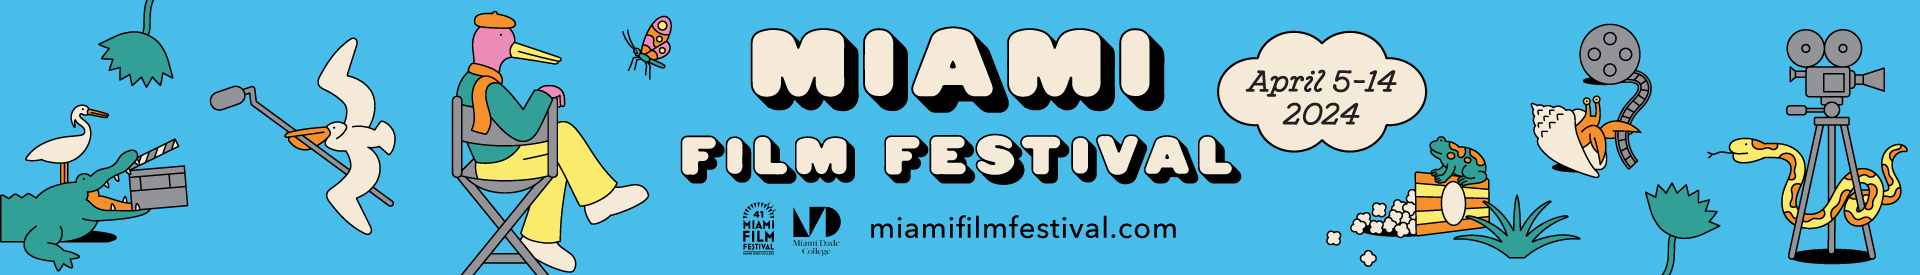 Miami Film Festival 2024